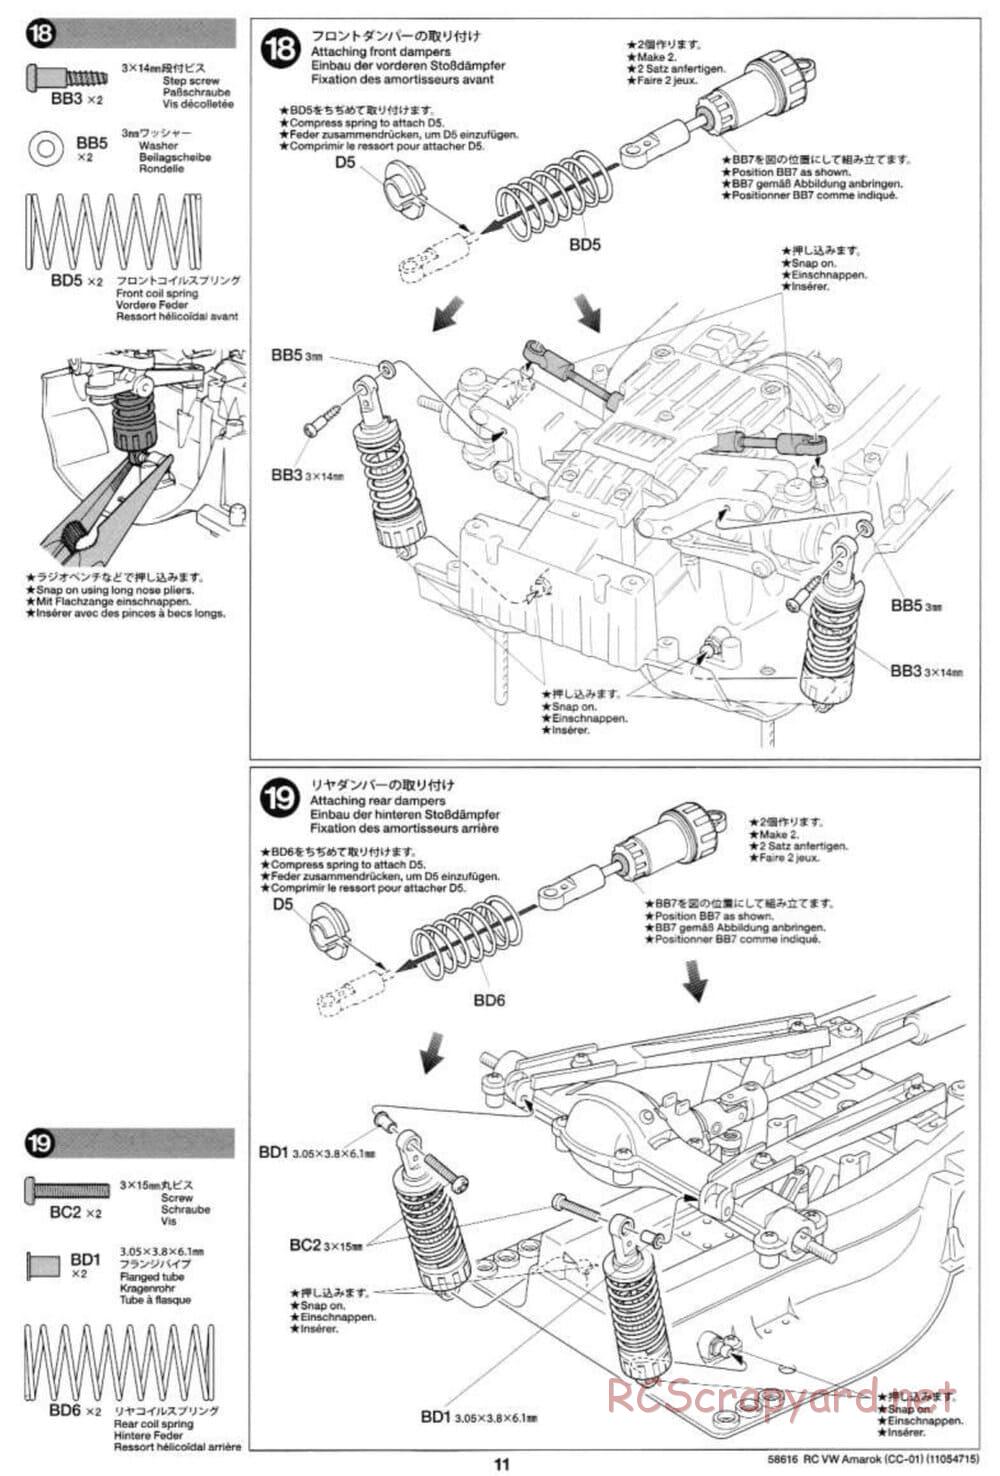 Tamiya - Volkswagen Amarok - CC-01 Chassis - Manual - Page 11